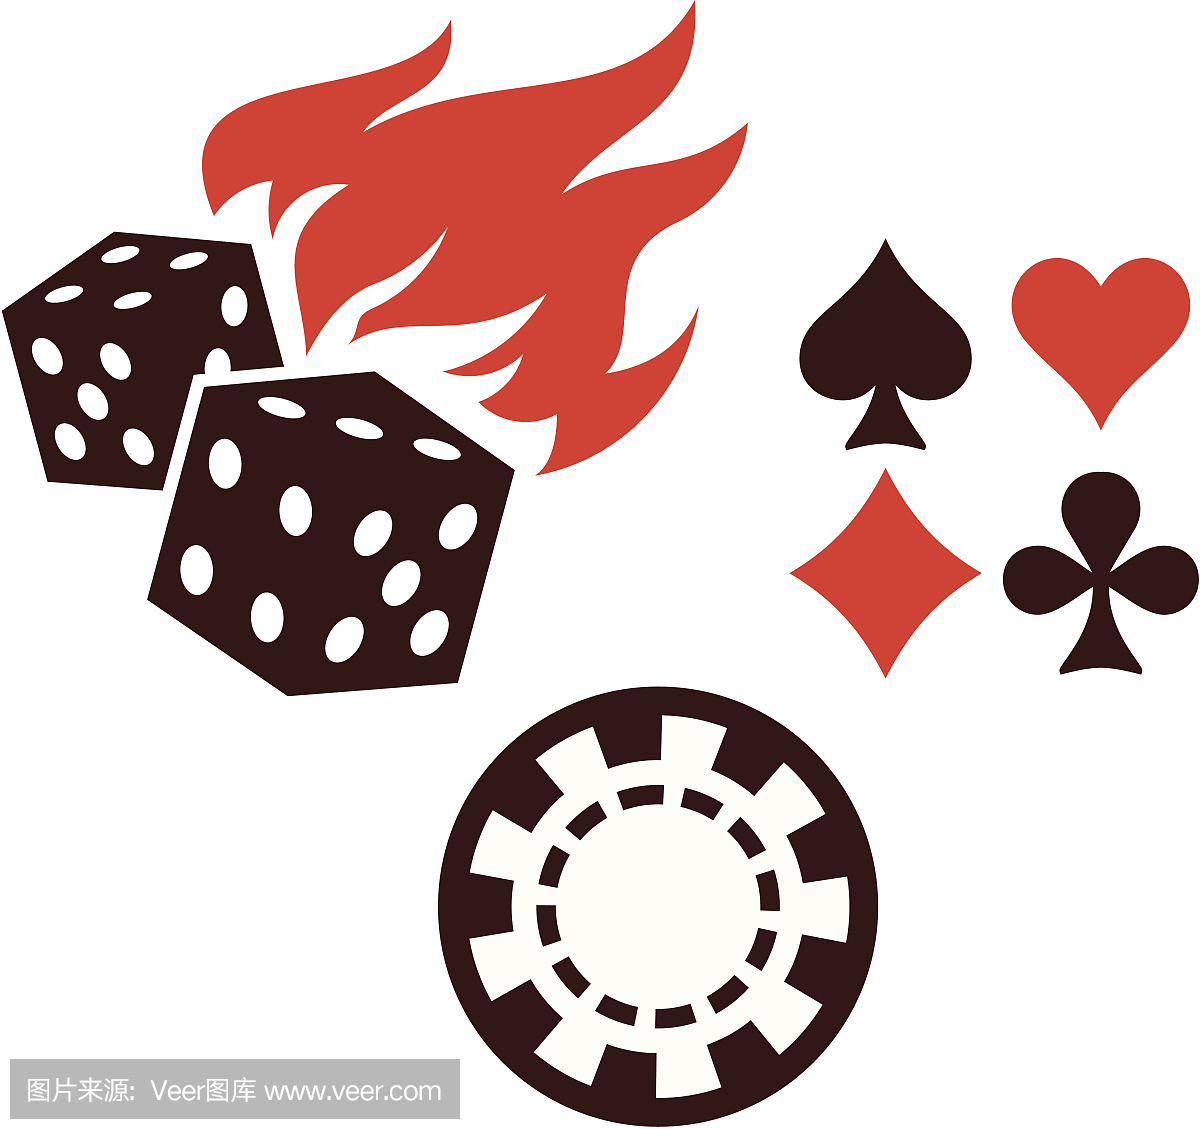 矢量赌博项目 - 骰子,扑克牌和赌场筹码